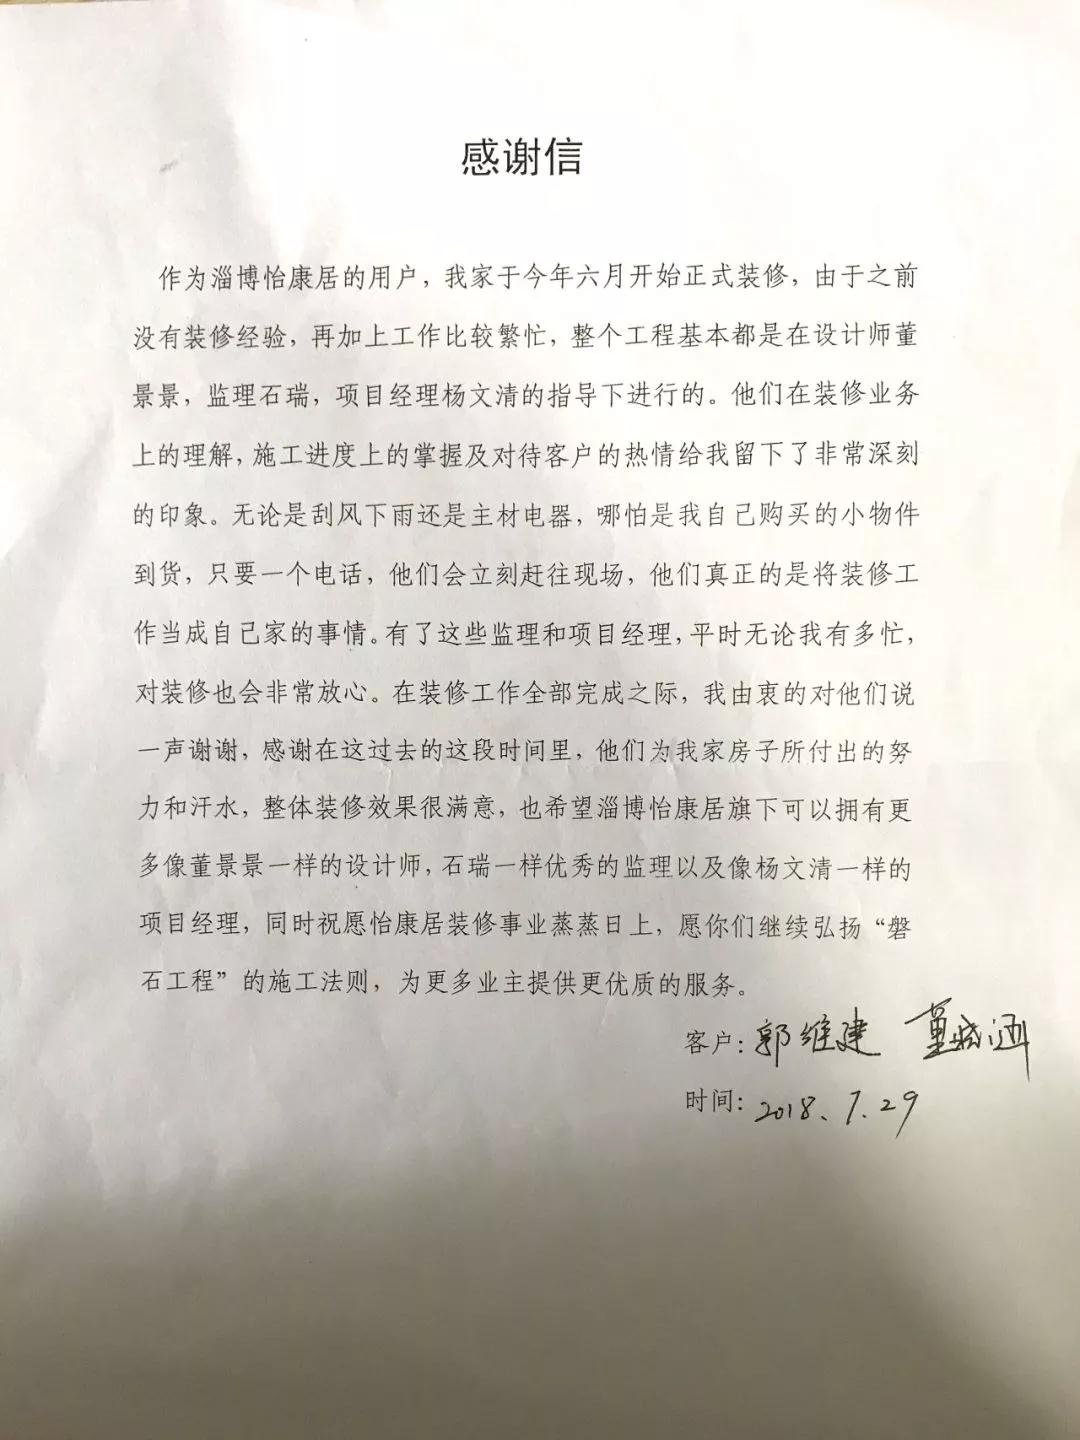 感谢信 | 来自齐悦国际郭老师和董老师的一封信